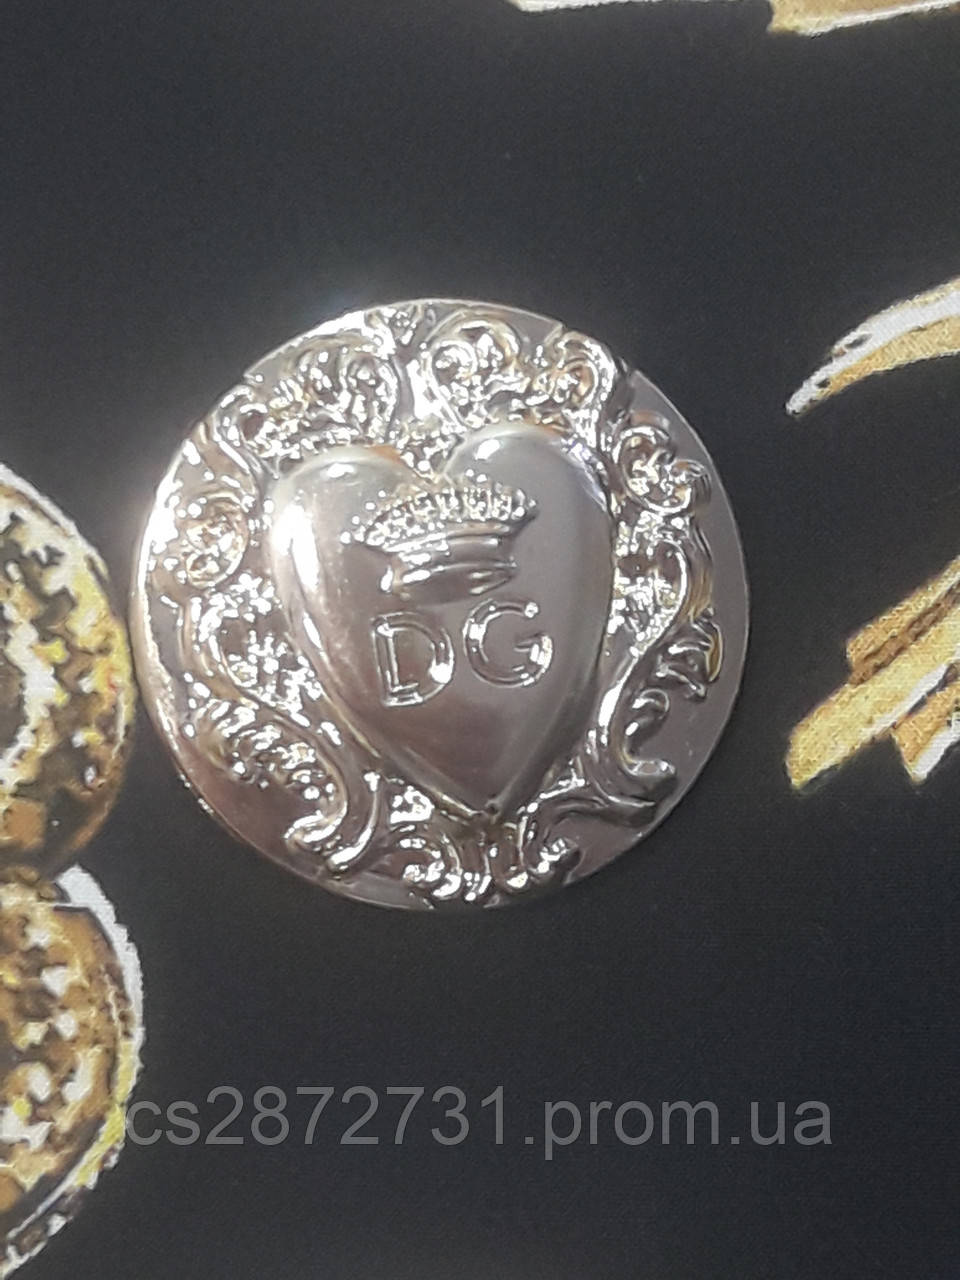 Пуговицы Dolce & Gabbana  круглой формы , металические диаметром 25 мм